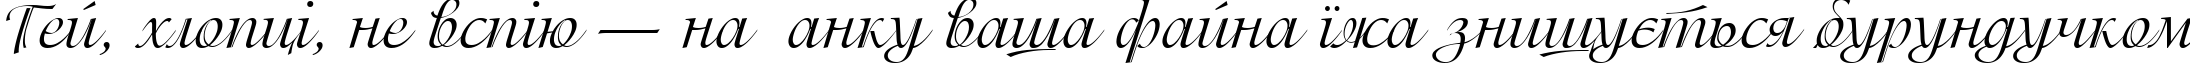 Пример написания шрифтом Isadora Cyr текста на украинском